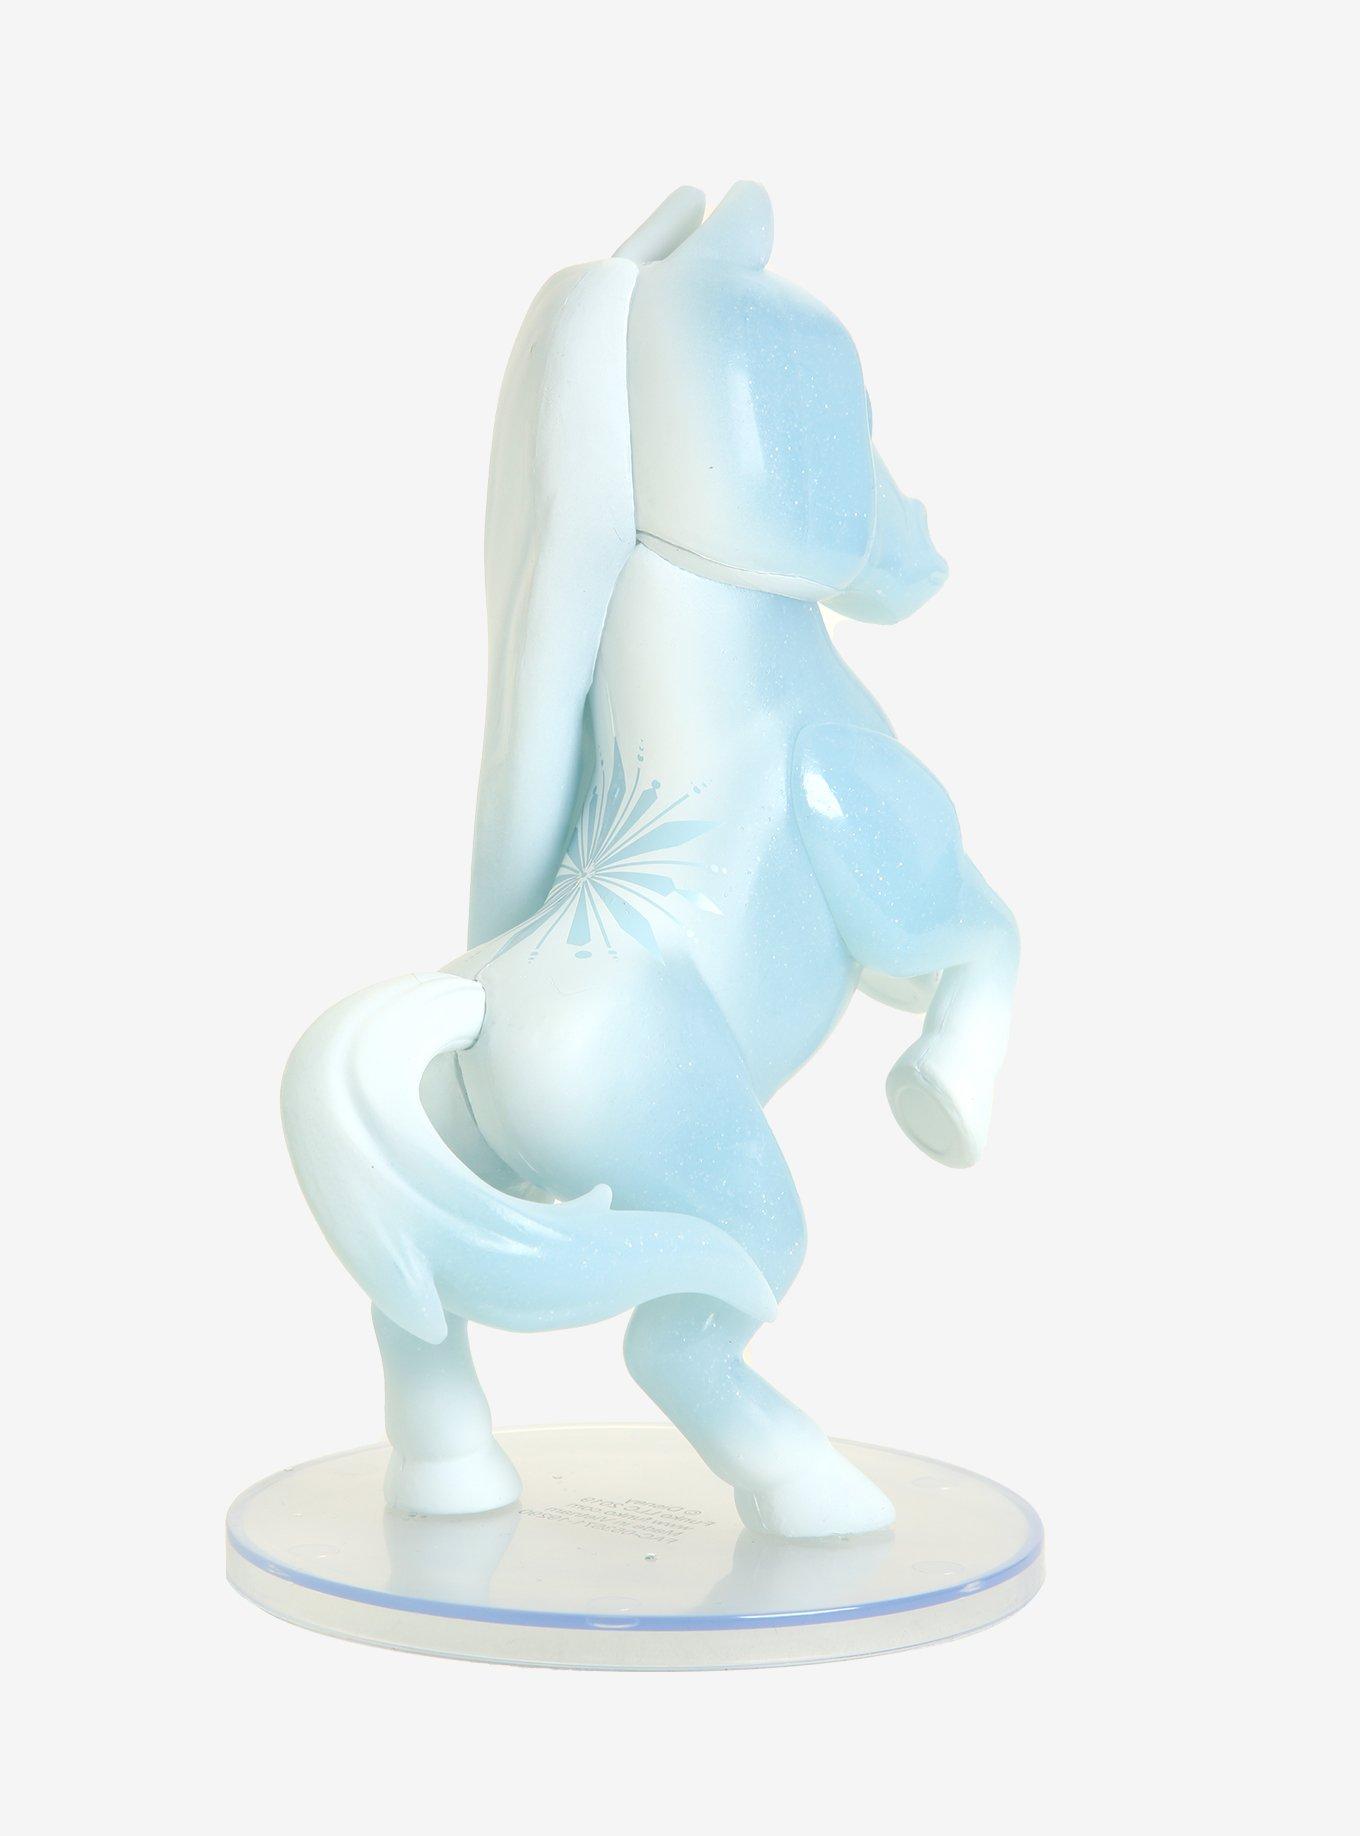 Funko Pop! Disney Frozen 2 The Water Nokk (Frozen) 6 Inch Vinyl Figure - BoxLunch Exclusive, , alternate